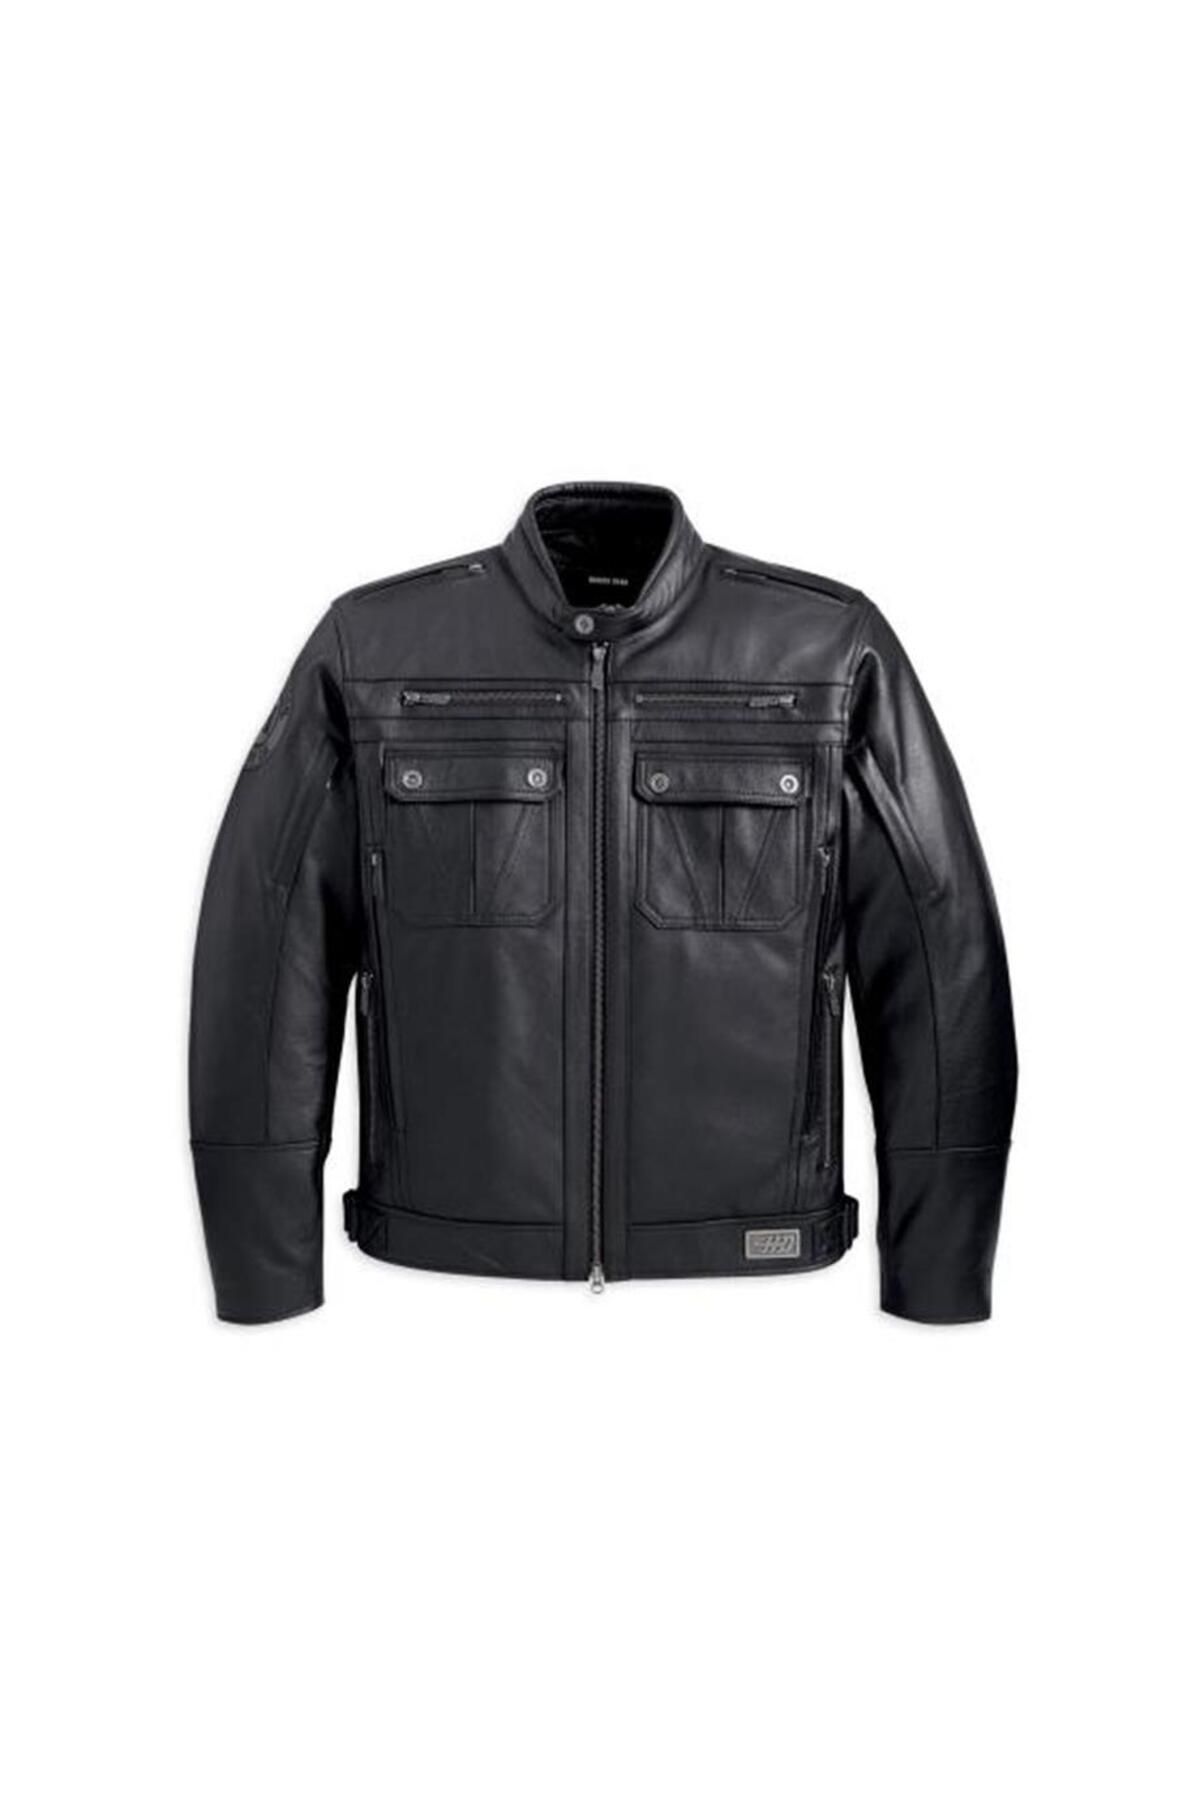 Harley Davidson Harley-Davidson Crossroads Leather Jacket